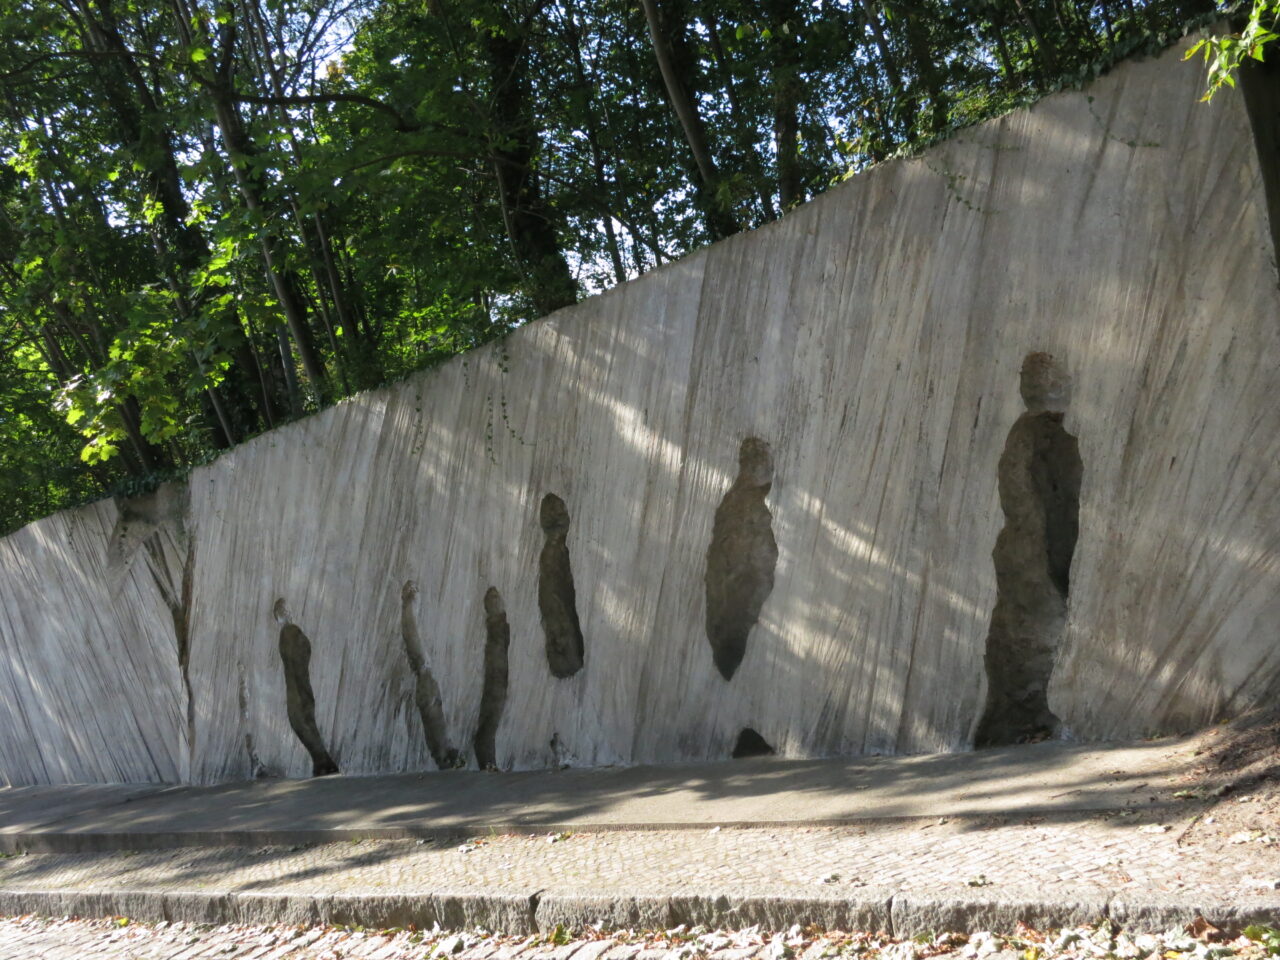 Image of Gleis 17 (Track 17) Deportation Memorial in Berlin, Germany, 2016